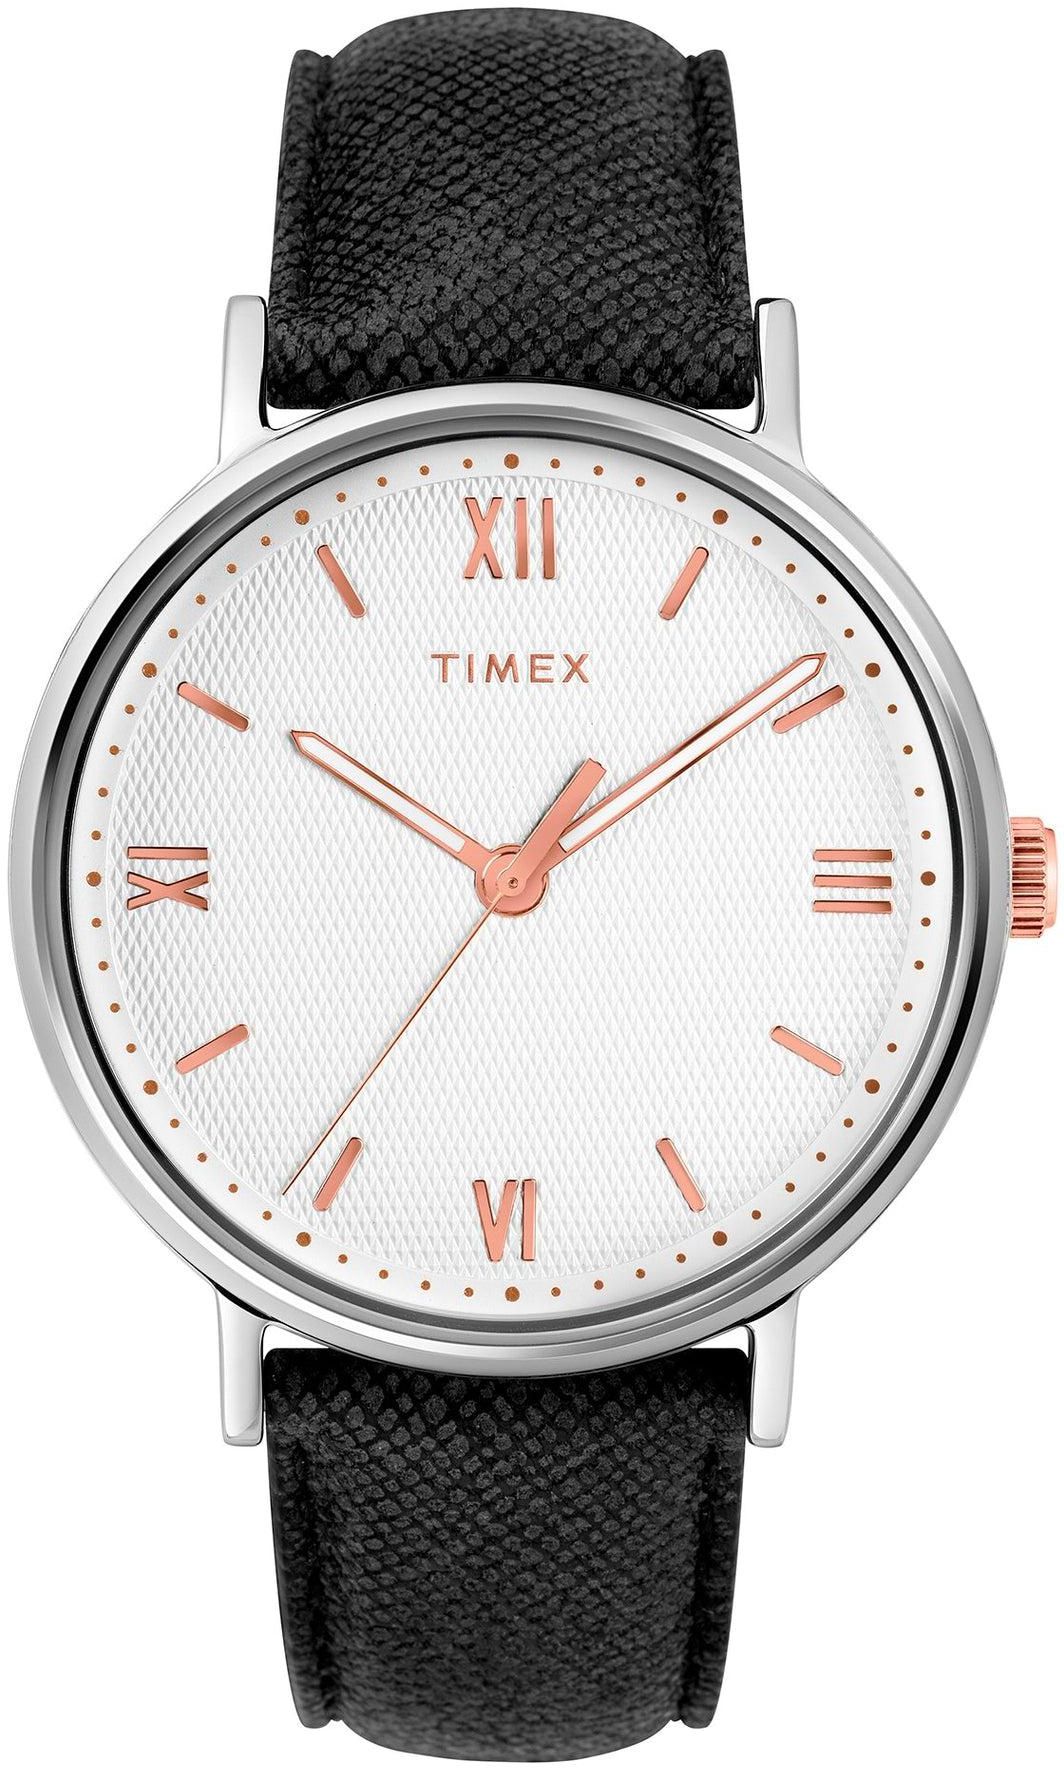 TW2T34700 TIMEX Men's Watch